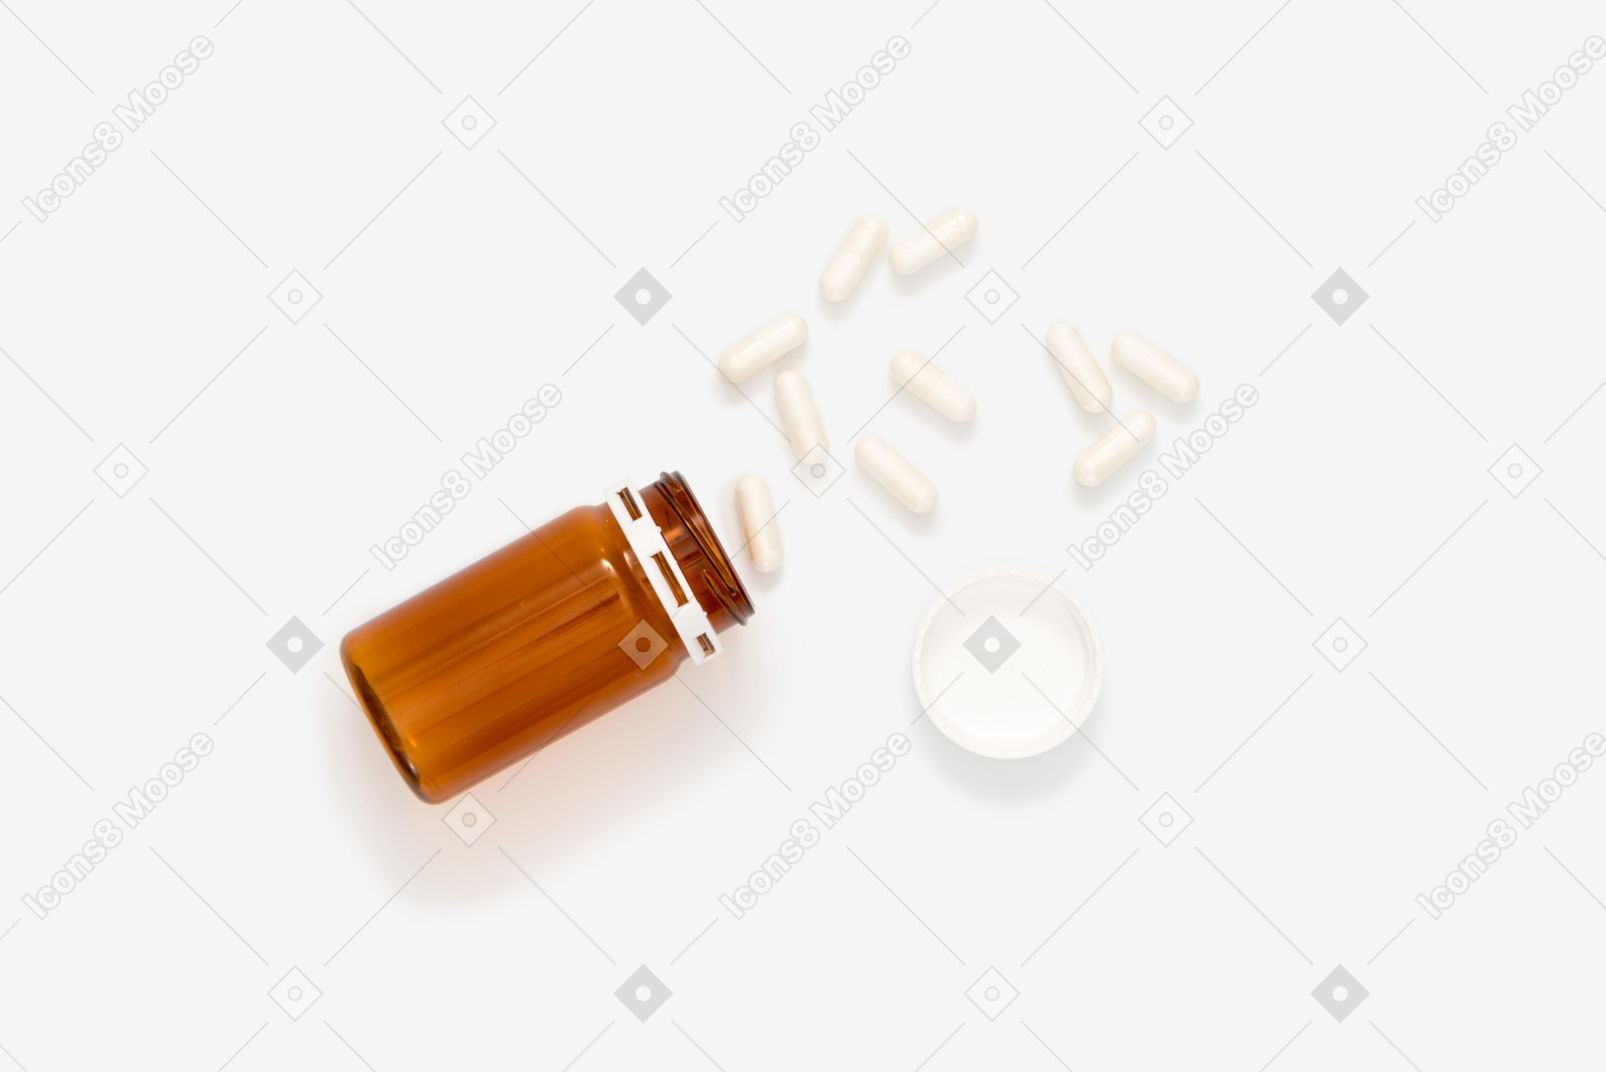 Brown plastic pill bottle